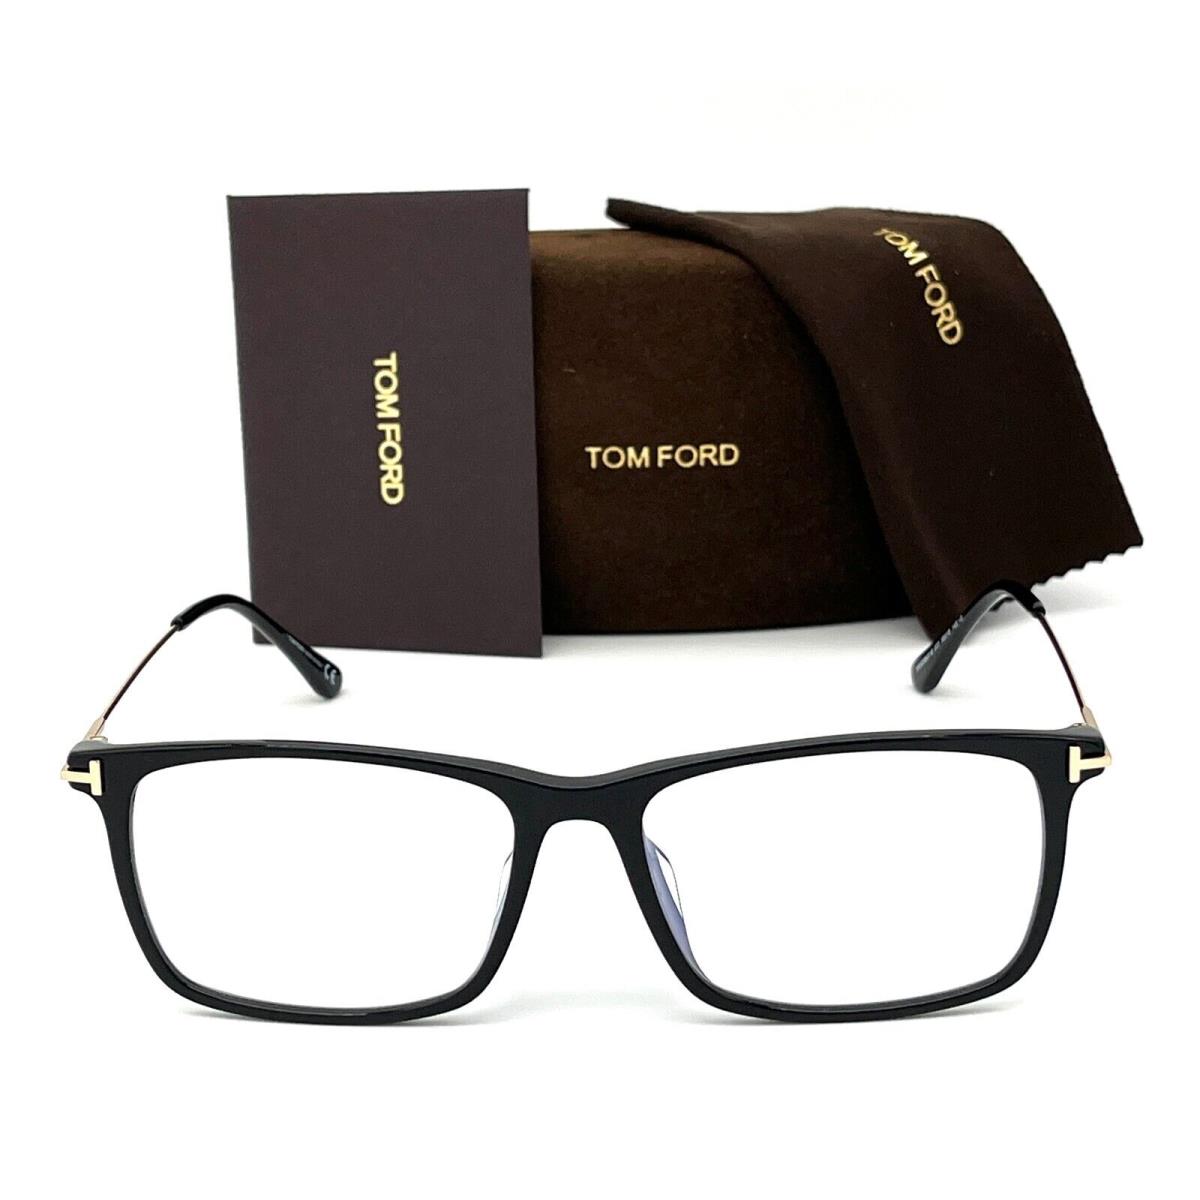 Tom Ford eyeglasses  - Shiny Black Frame, Blue Block Lens 1